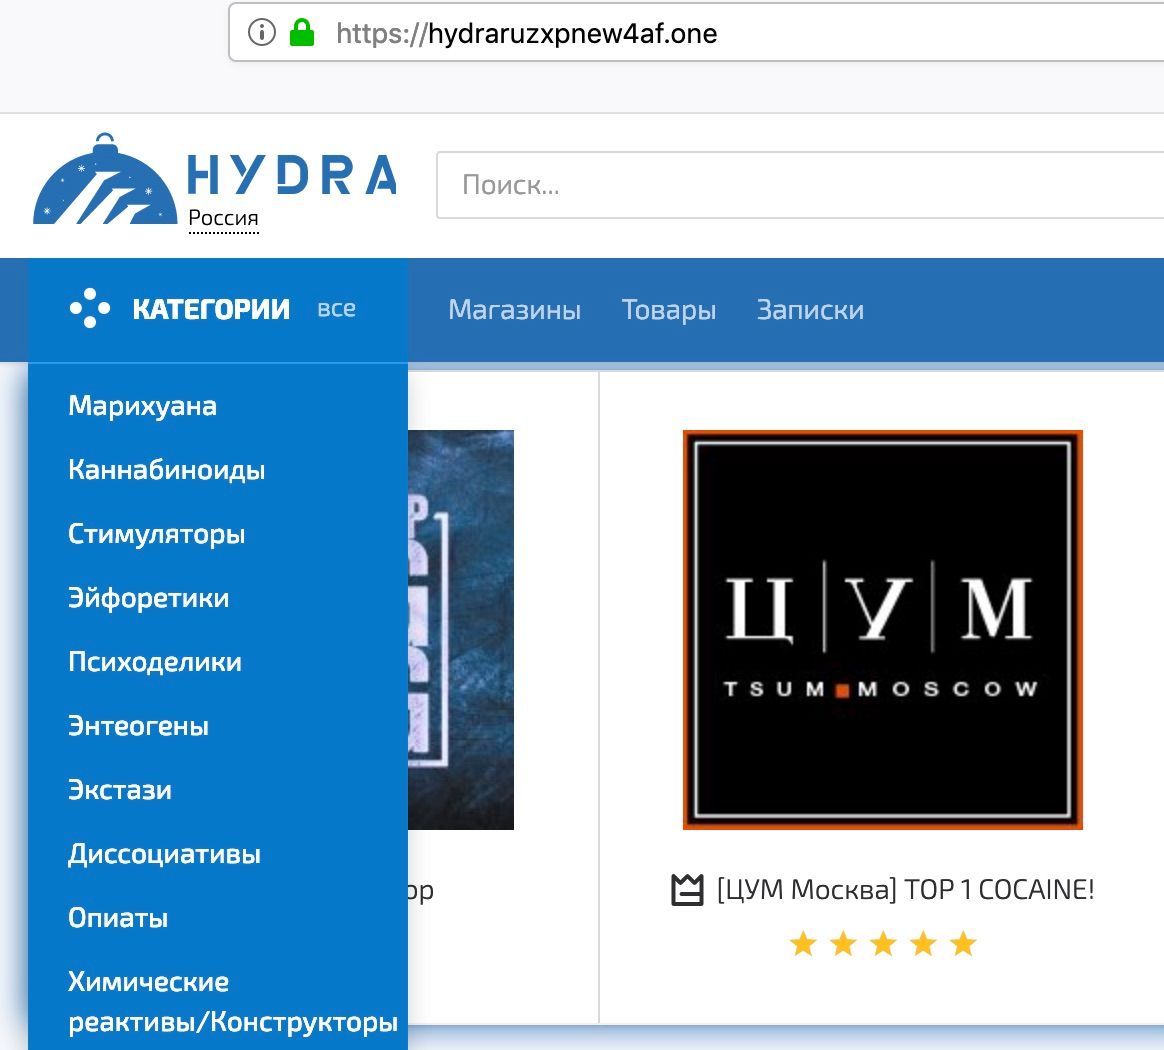 официальный сайт darknet hydraruzxpnew4af